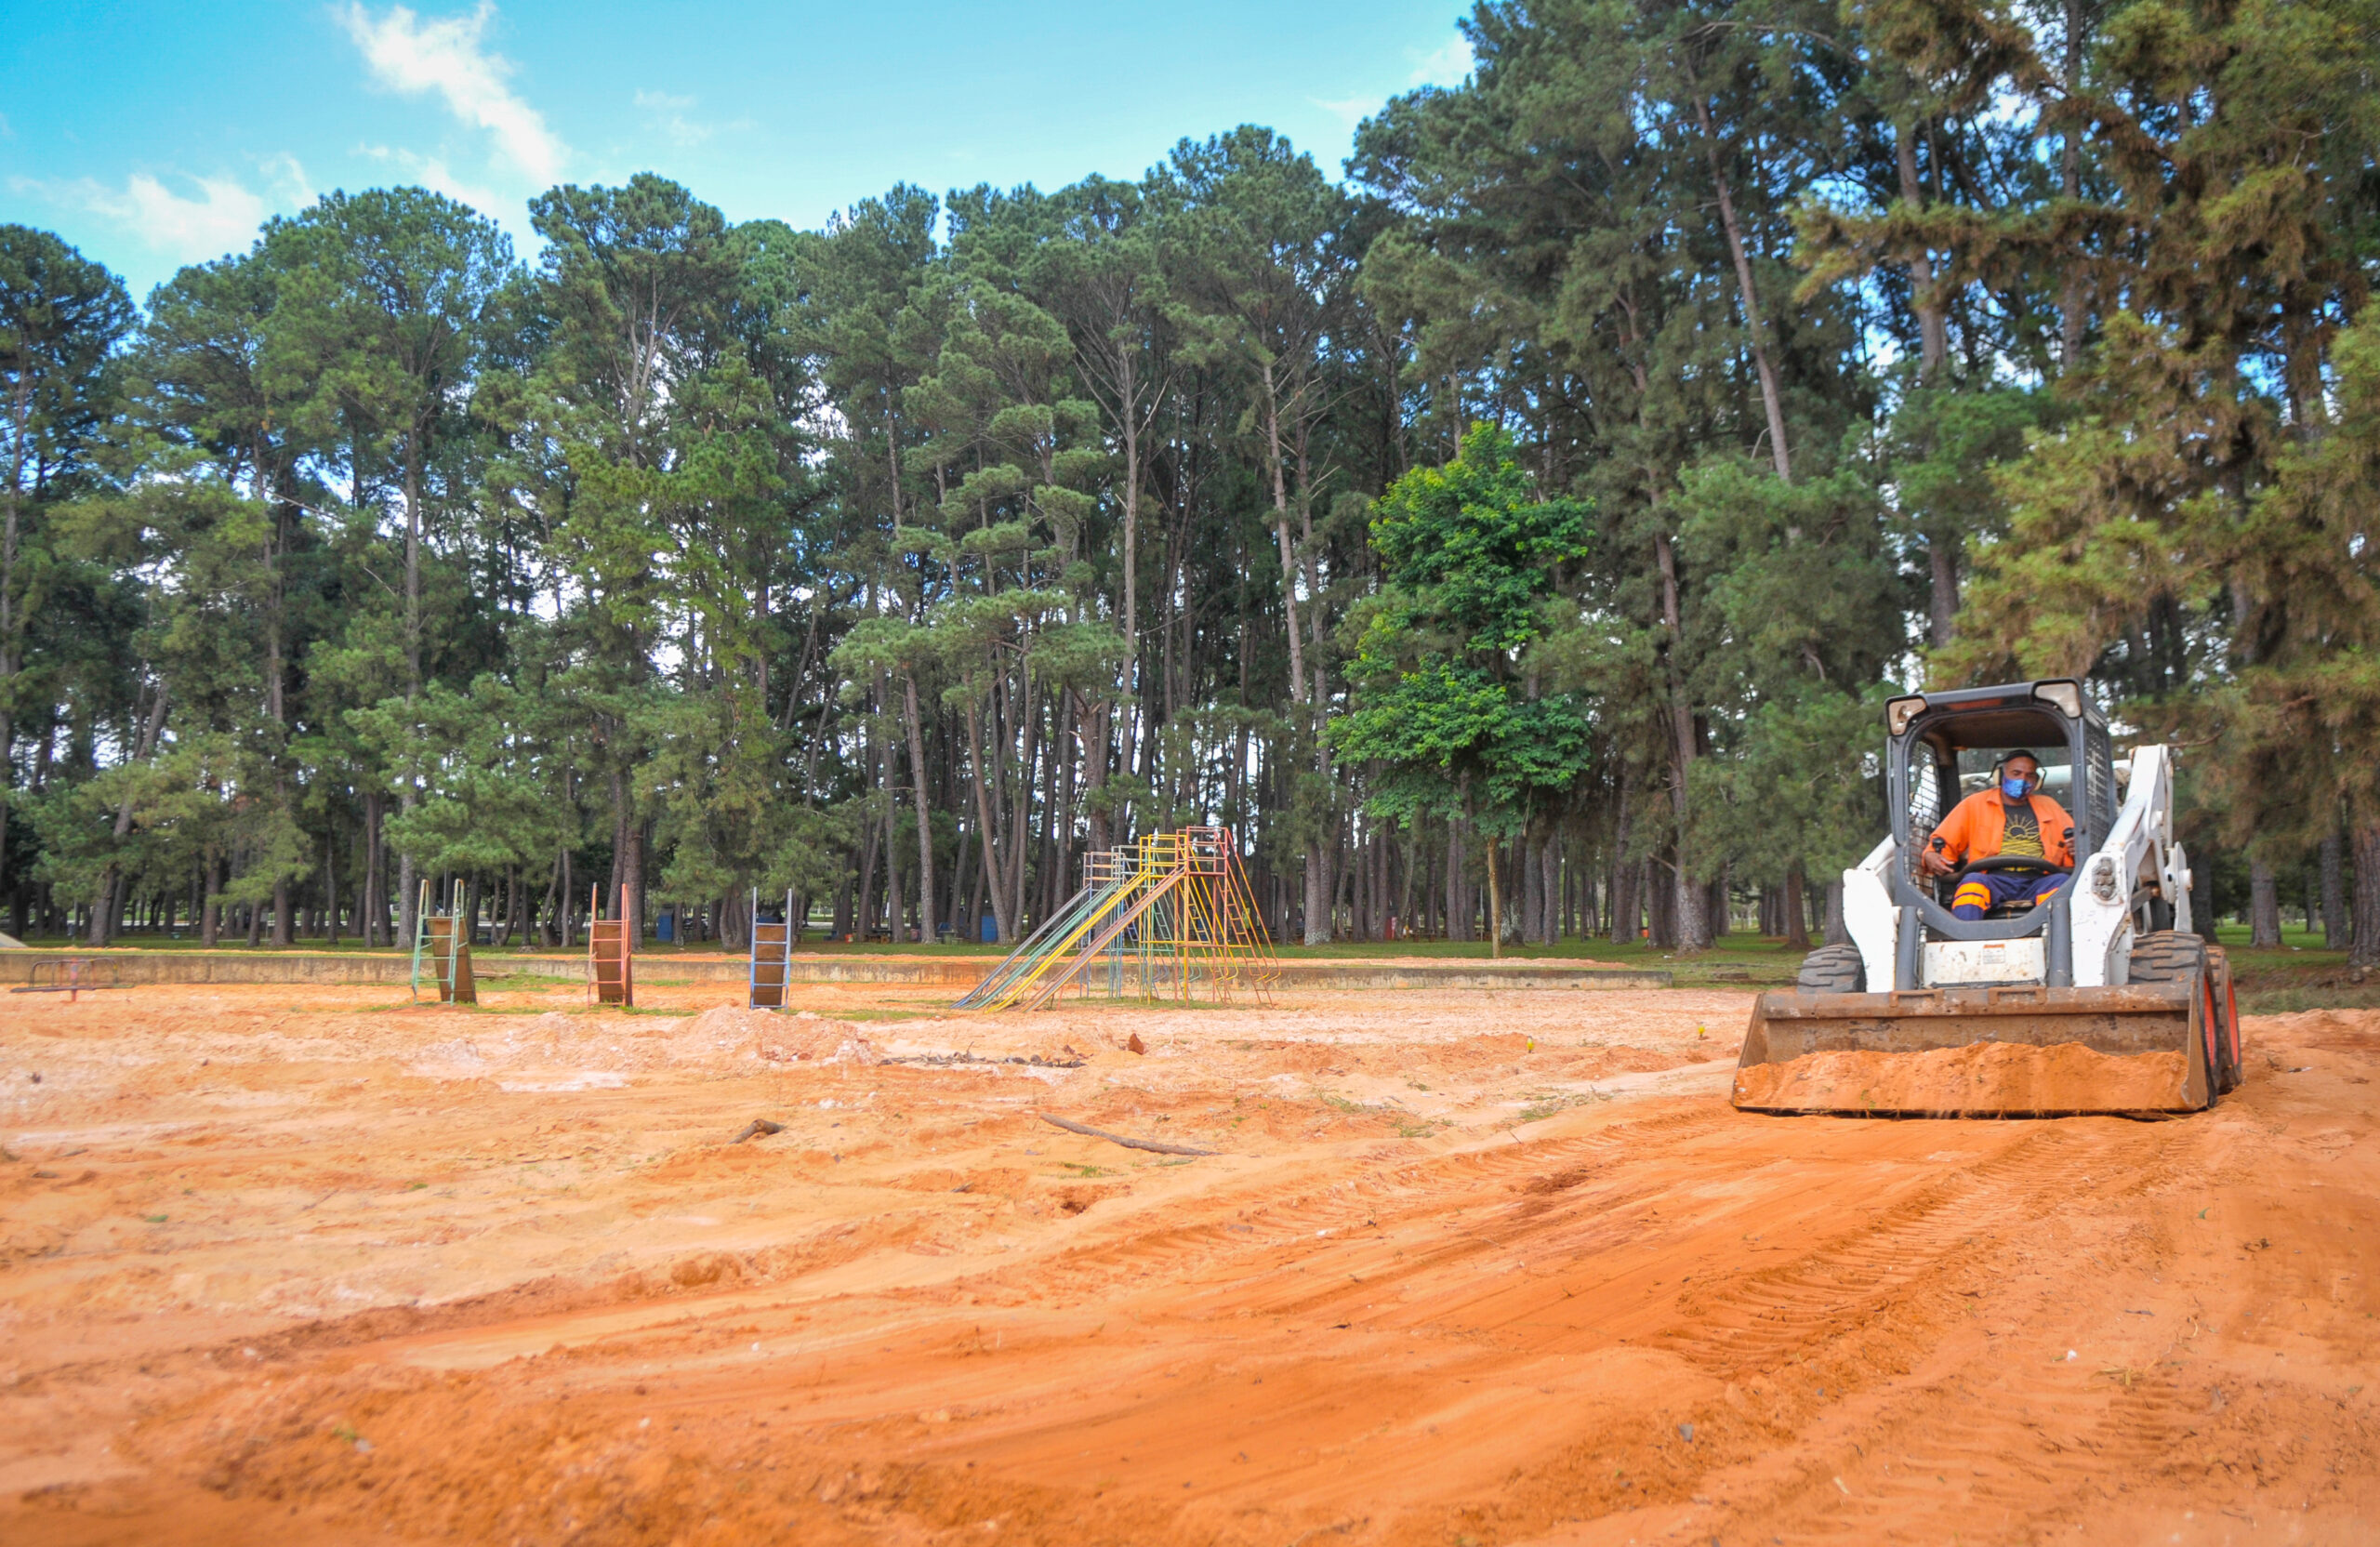 Uma máquina do tipo bobcat trabalha revirando e nivelando o extenso campo de areia do parque | Foto: Geovana Albuquerque/Agência Brasília